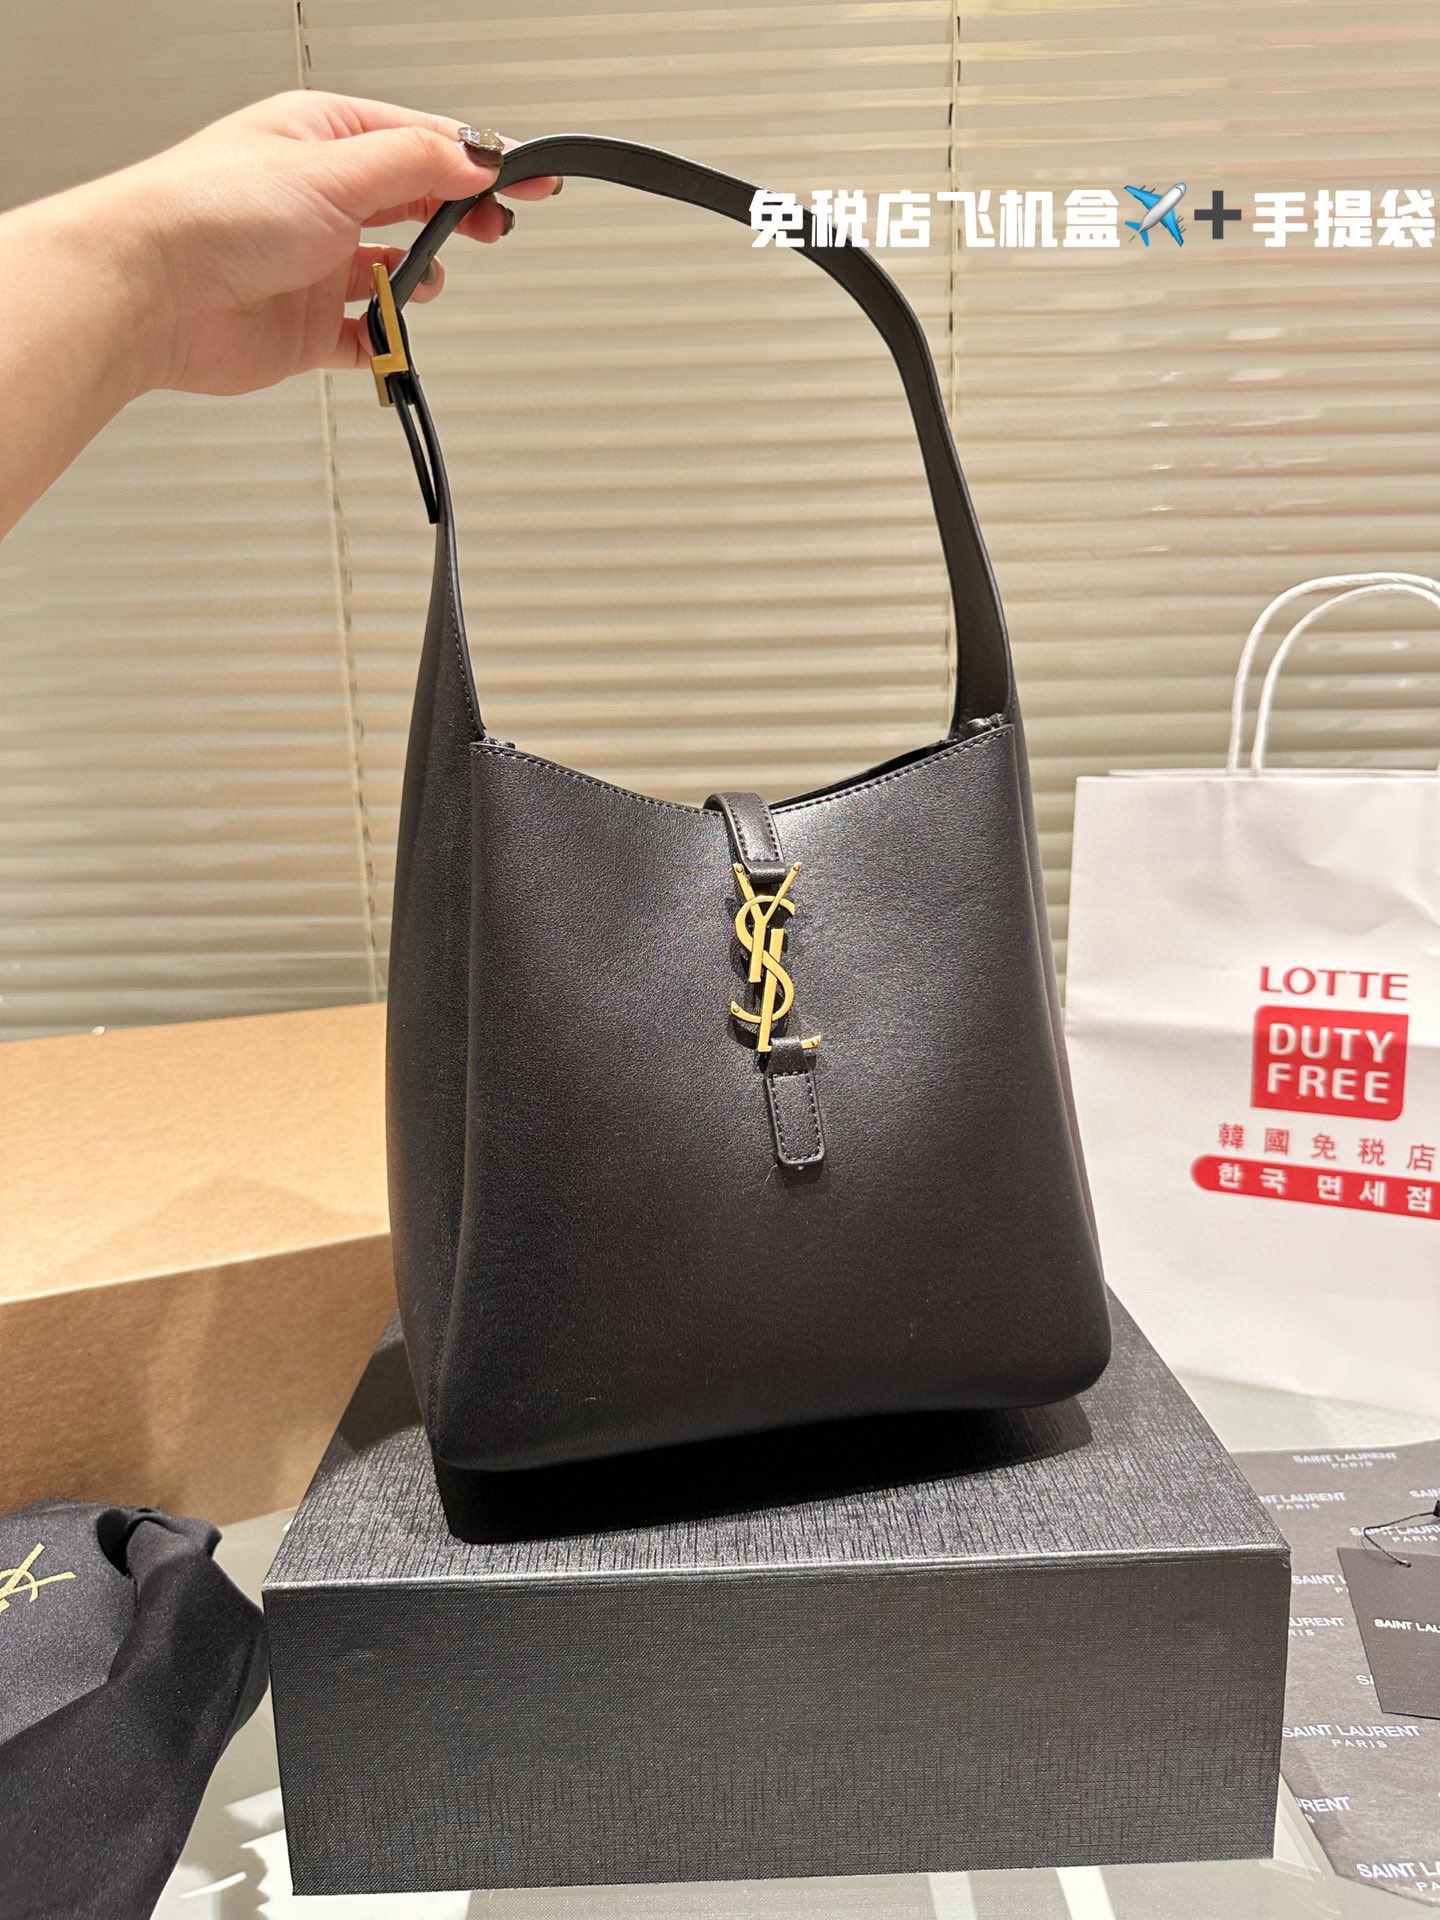 Yves Saint Laurent Handbags Tote Bags Deerskin Fashion